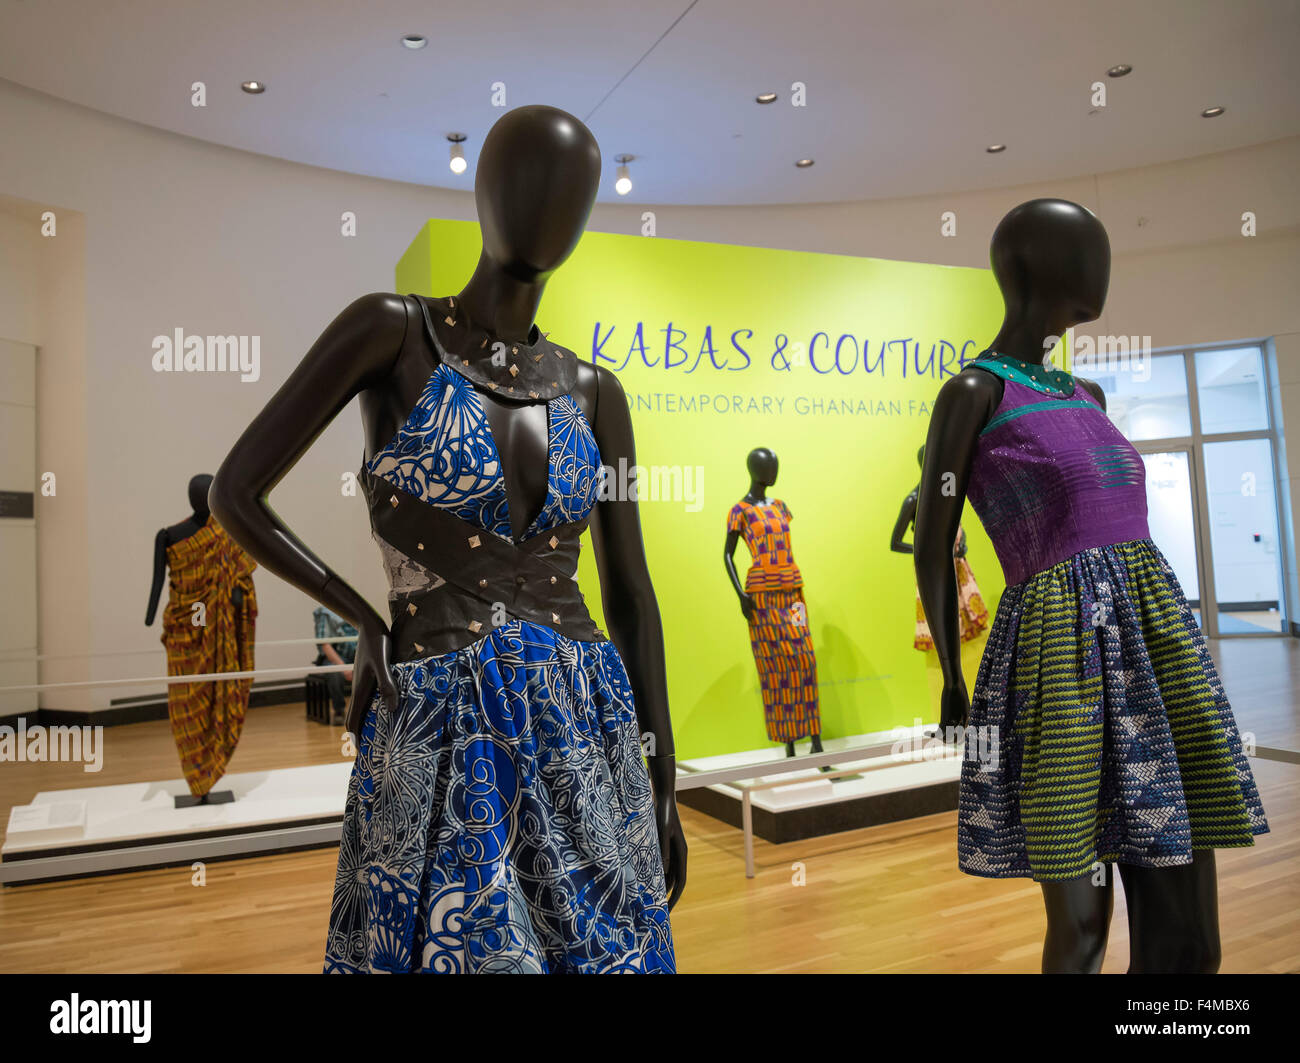 Kabas & Couture, mode ghanéenne contemporaine Banque D'Images